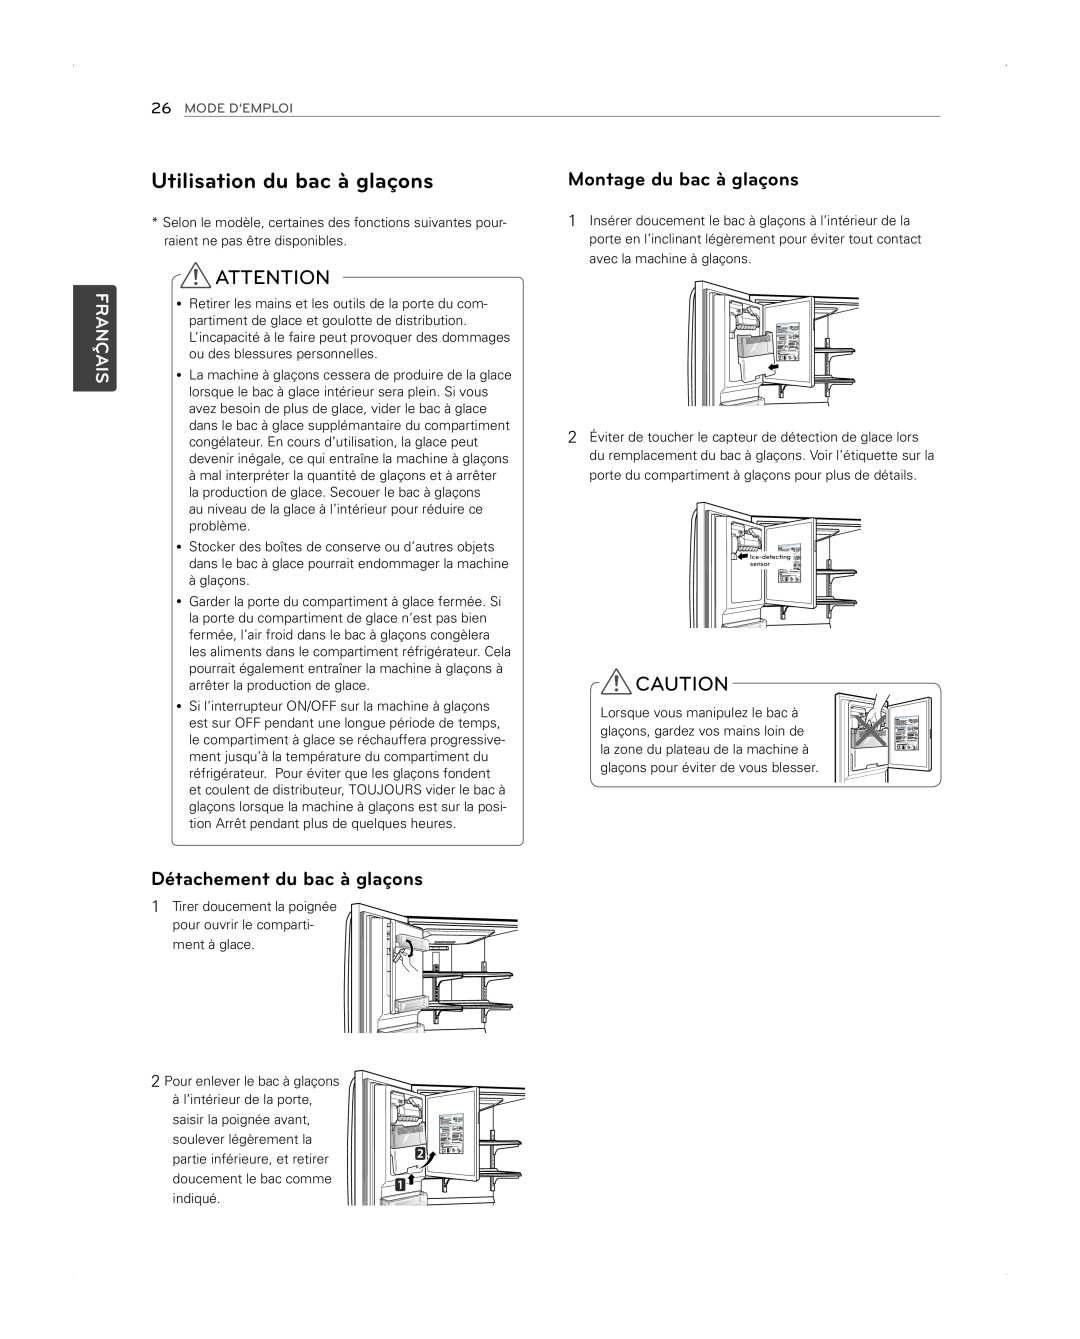 LG Electronics LFX31945ST Utilisation du bac à glaçons, Montage du bac à glaçons, Détachement du bac à glaçons, Français 